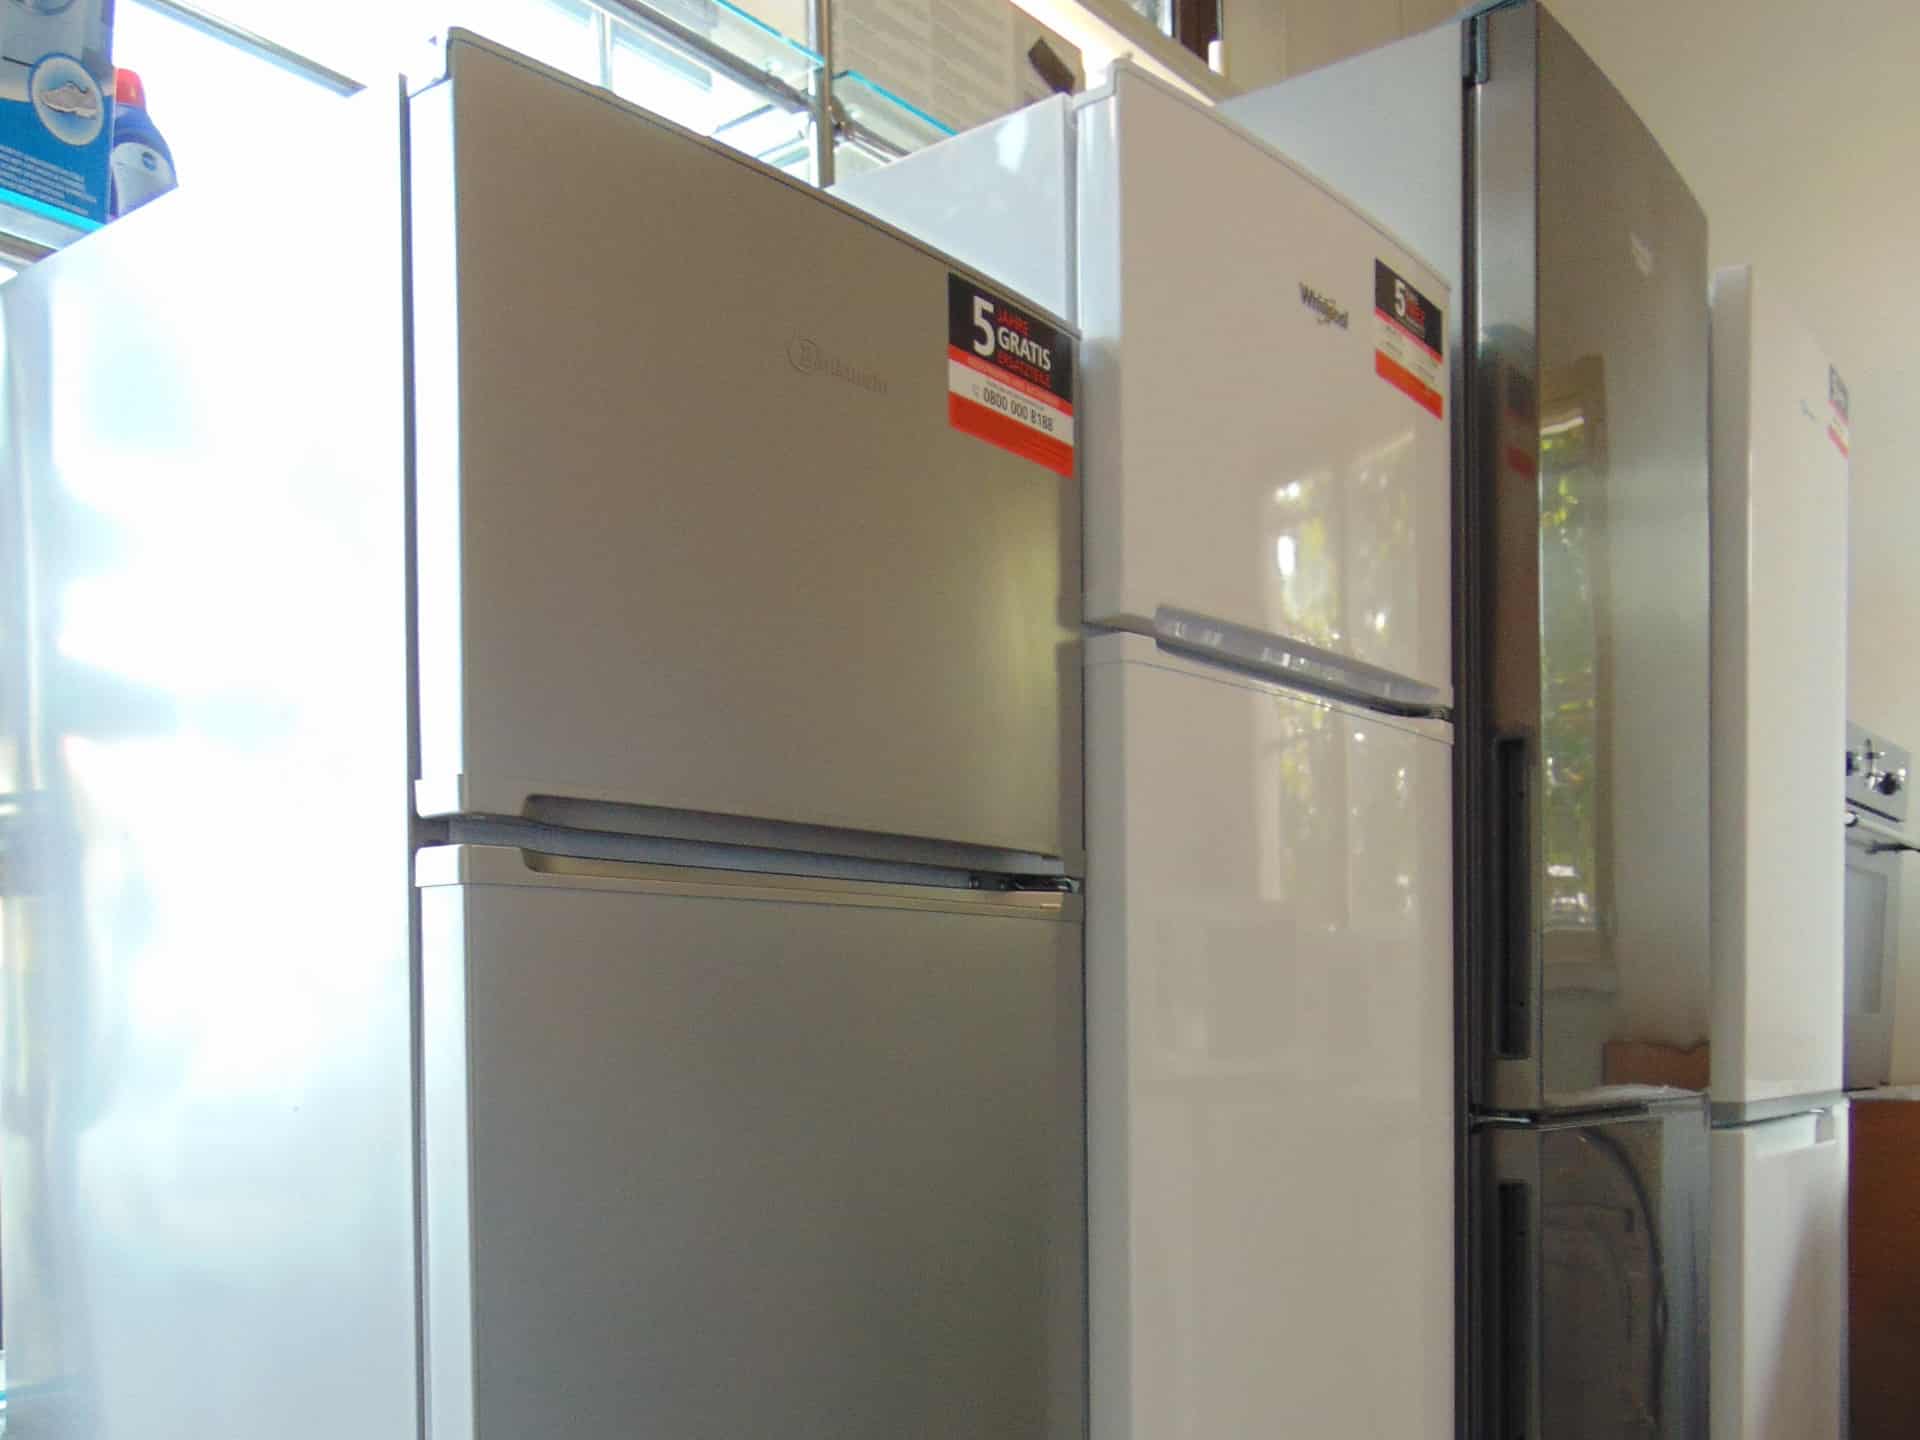 Refrigrazione: Vendita frigoriferi combinati, frigoriferi e congelatori - Rimini Service